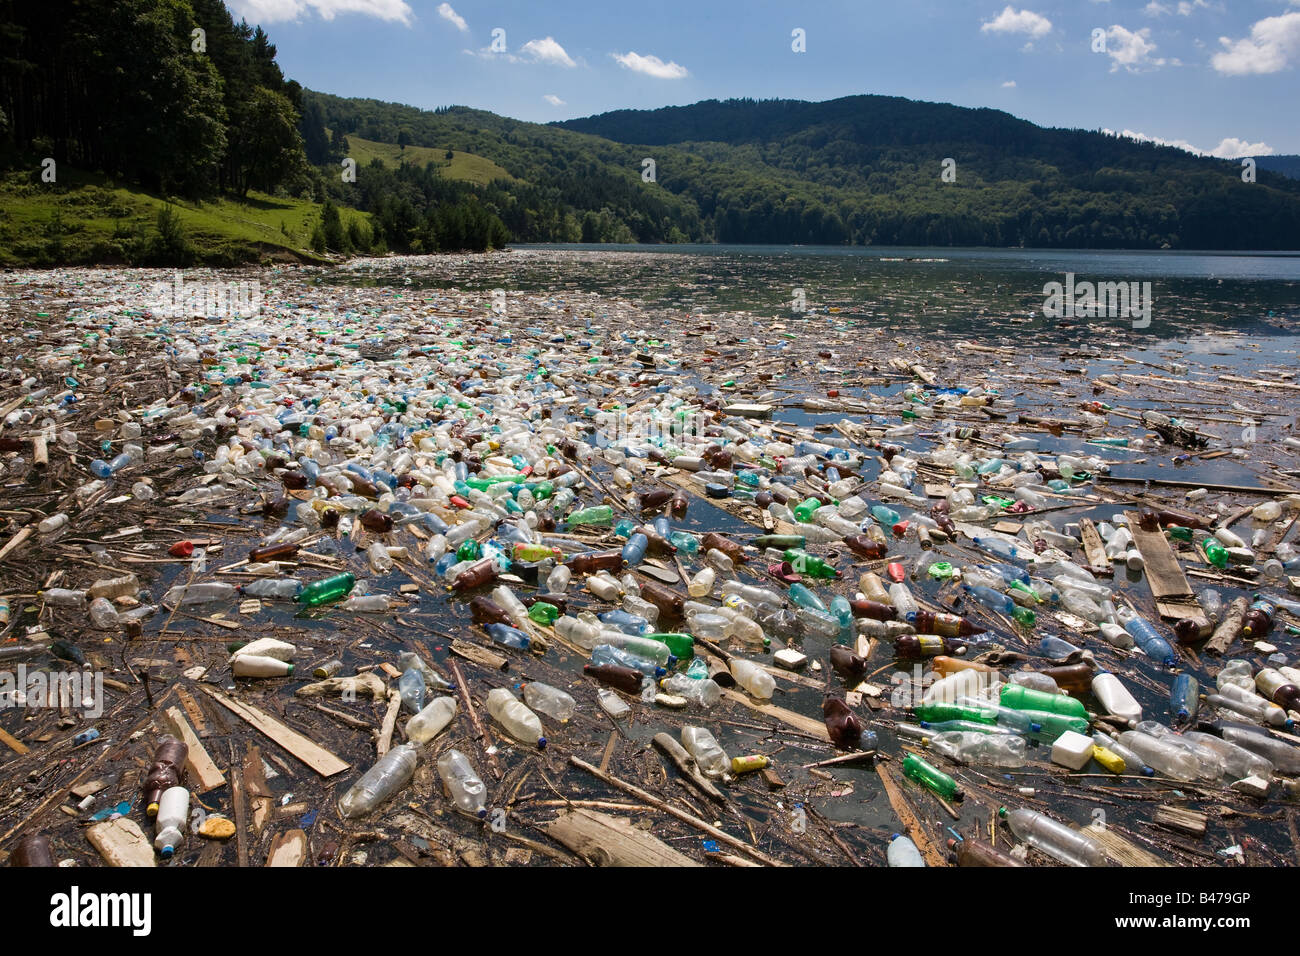 Corbeille en plastique très importante et la pollution sur le lac Bicaz magnifique en Roumanie Banque D'Images